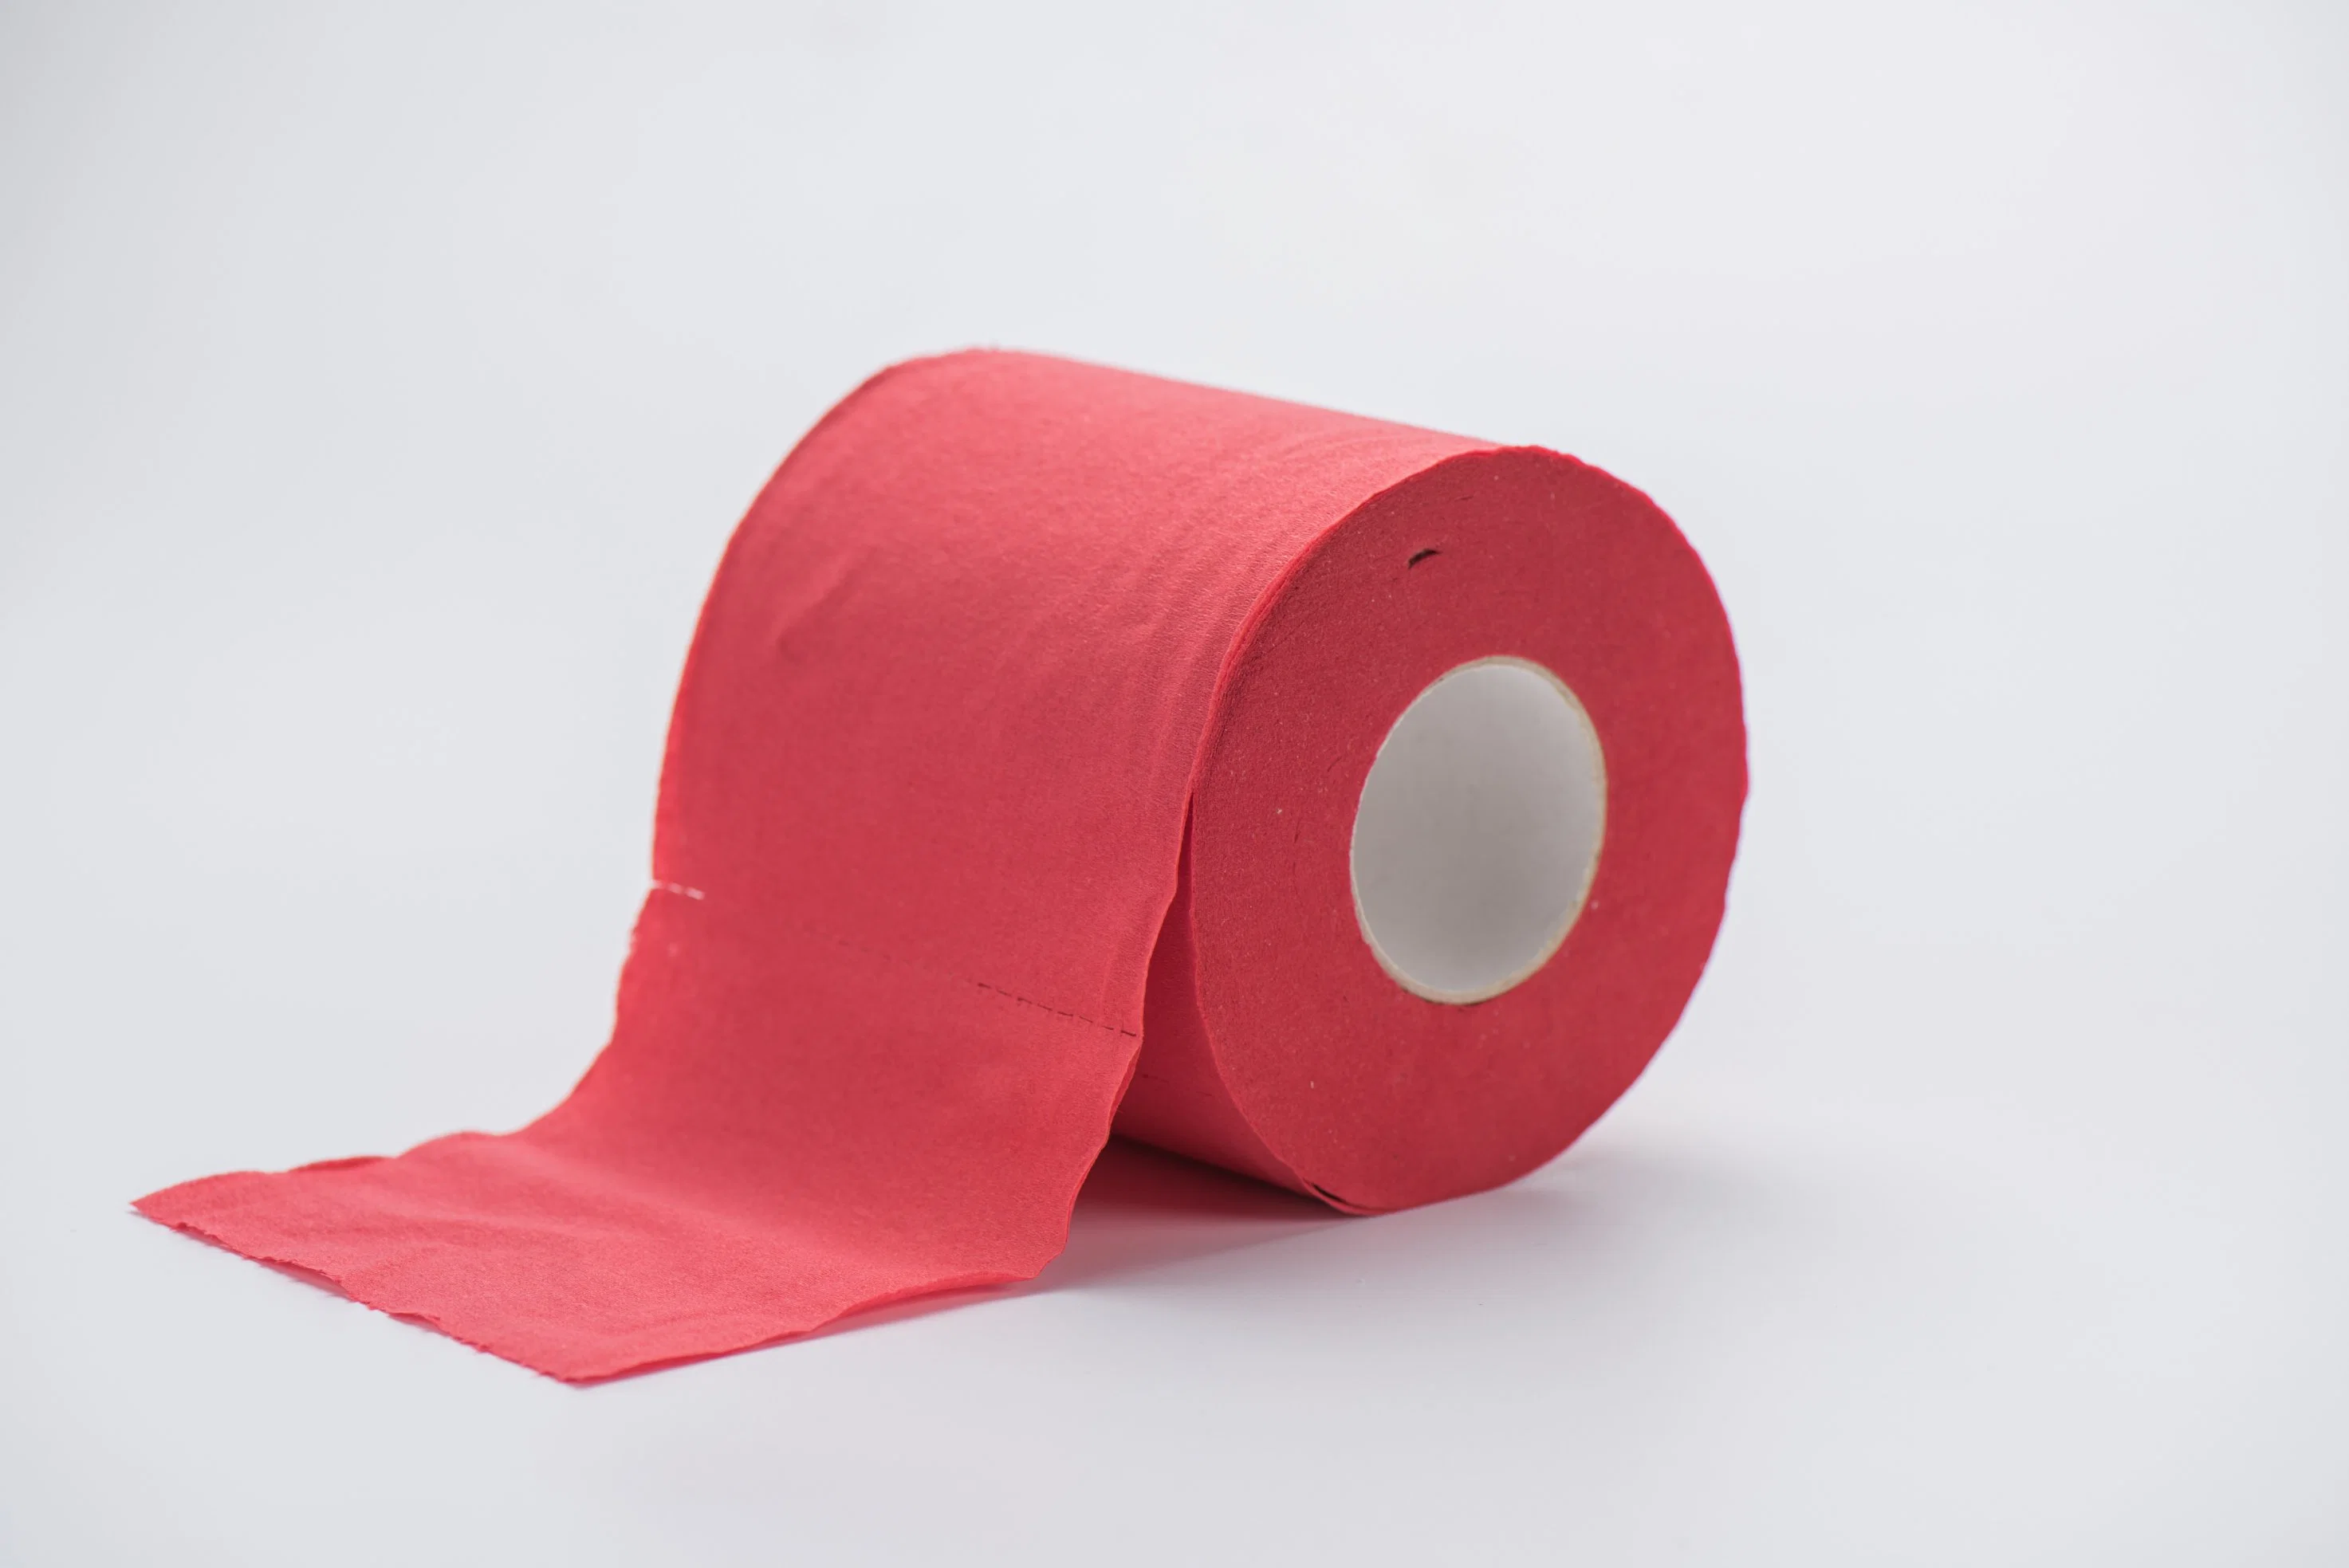 Farbiges Seidenpapier Für Toilettenpapierrollen